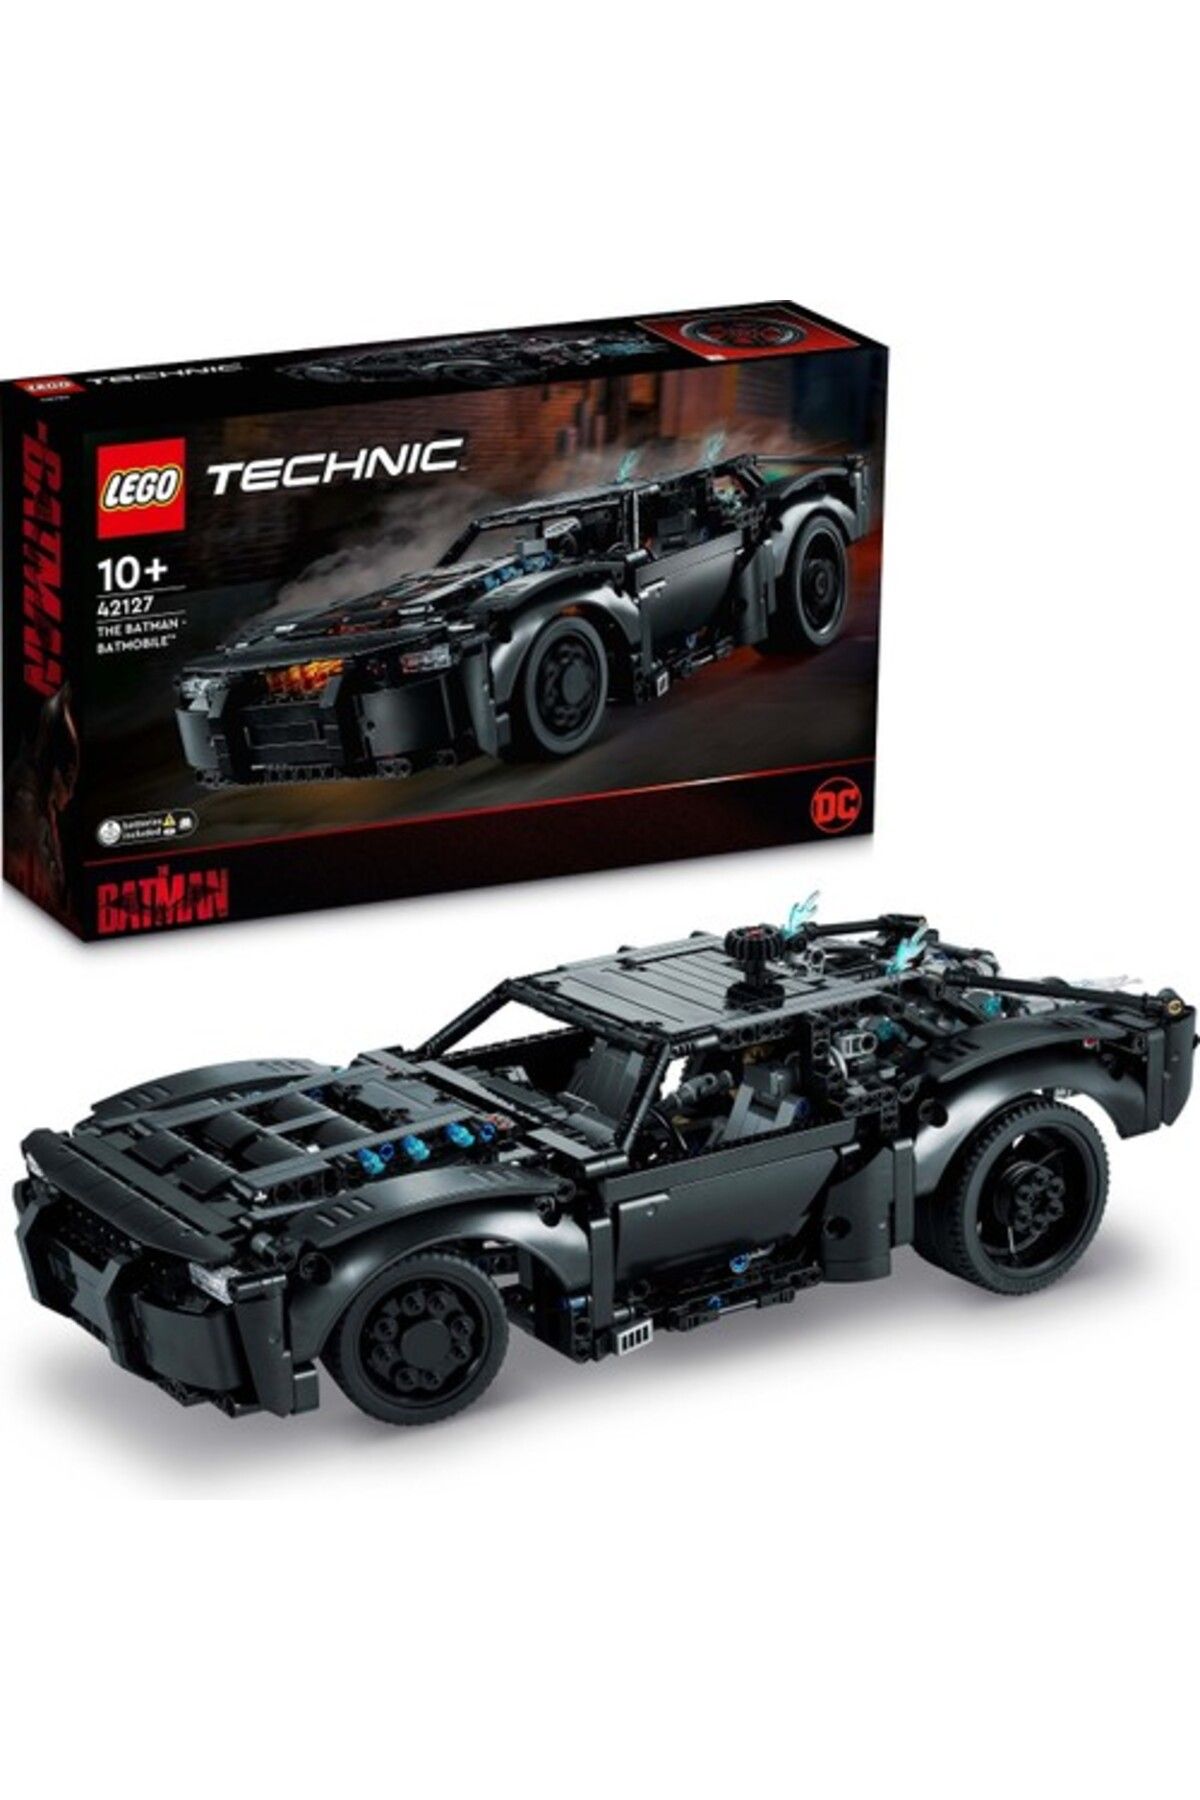 LEGO ® Technic BATMAN – BATMOBİL 42127 - Koleksiyonluk Araba Modeli Yapım Seti (1360 Parça)